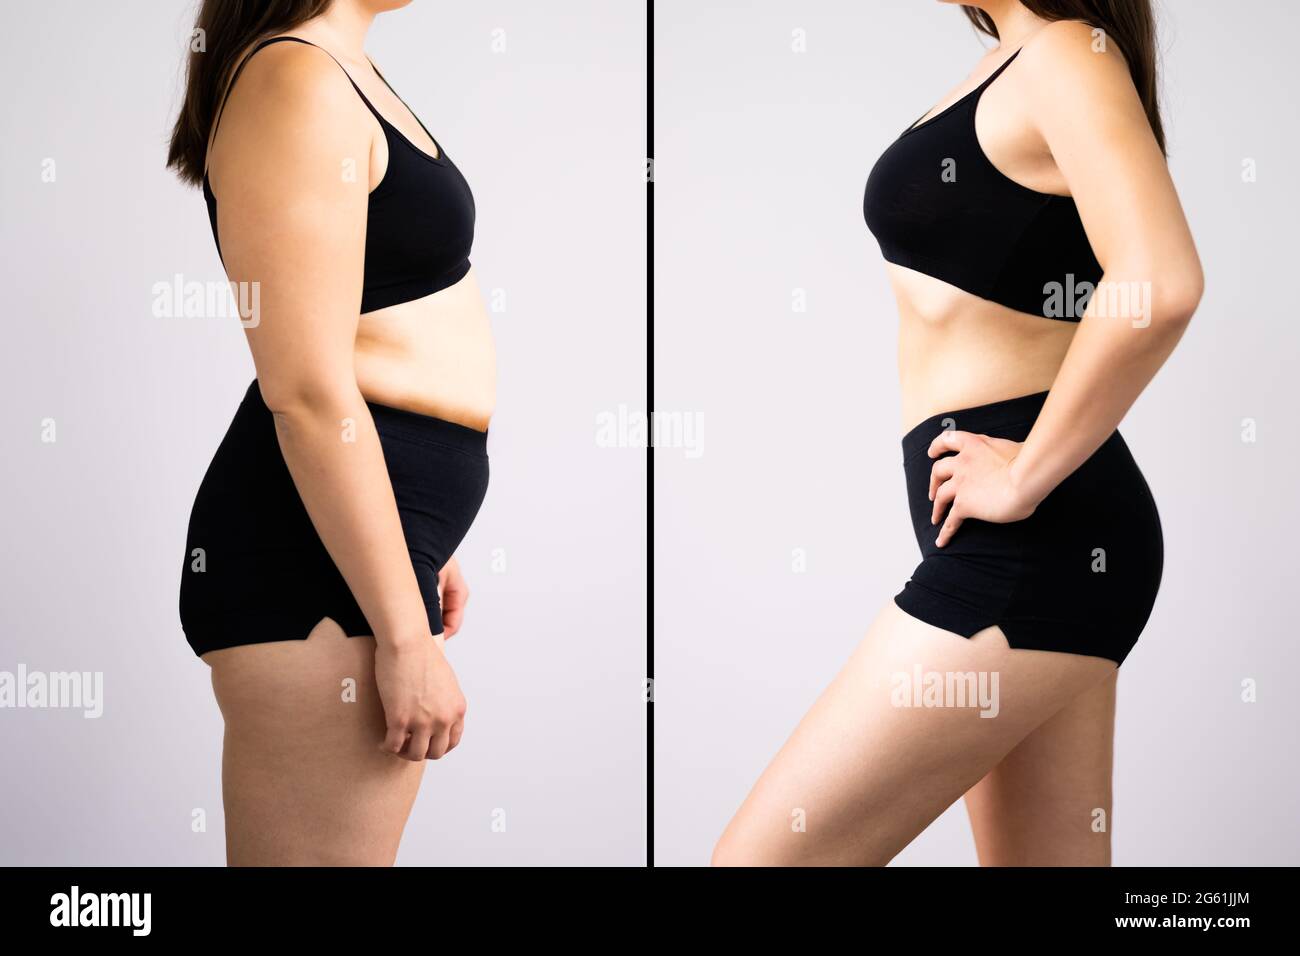 Mujer antes y después de la pérdida de peso sobre fondo gris. La forma del cuerpo se alteró durante el retoque Foto de stock